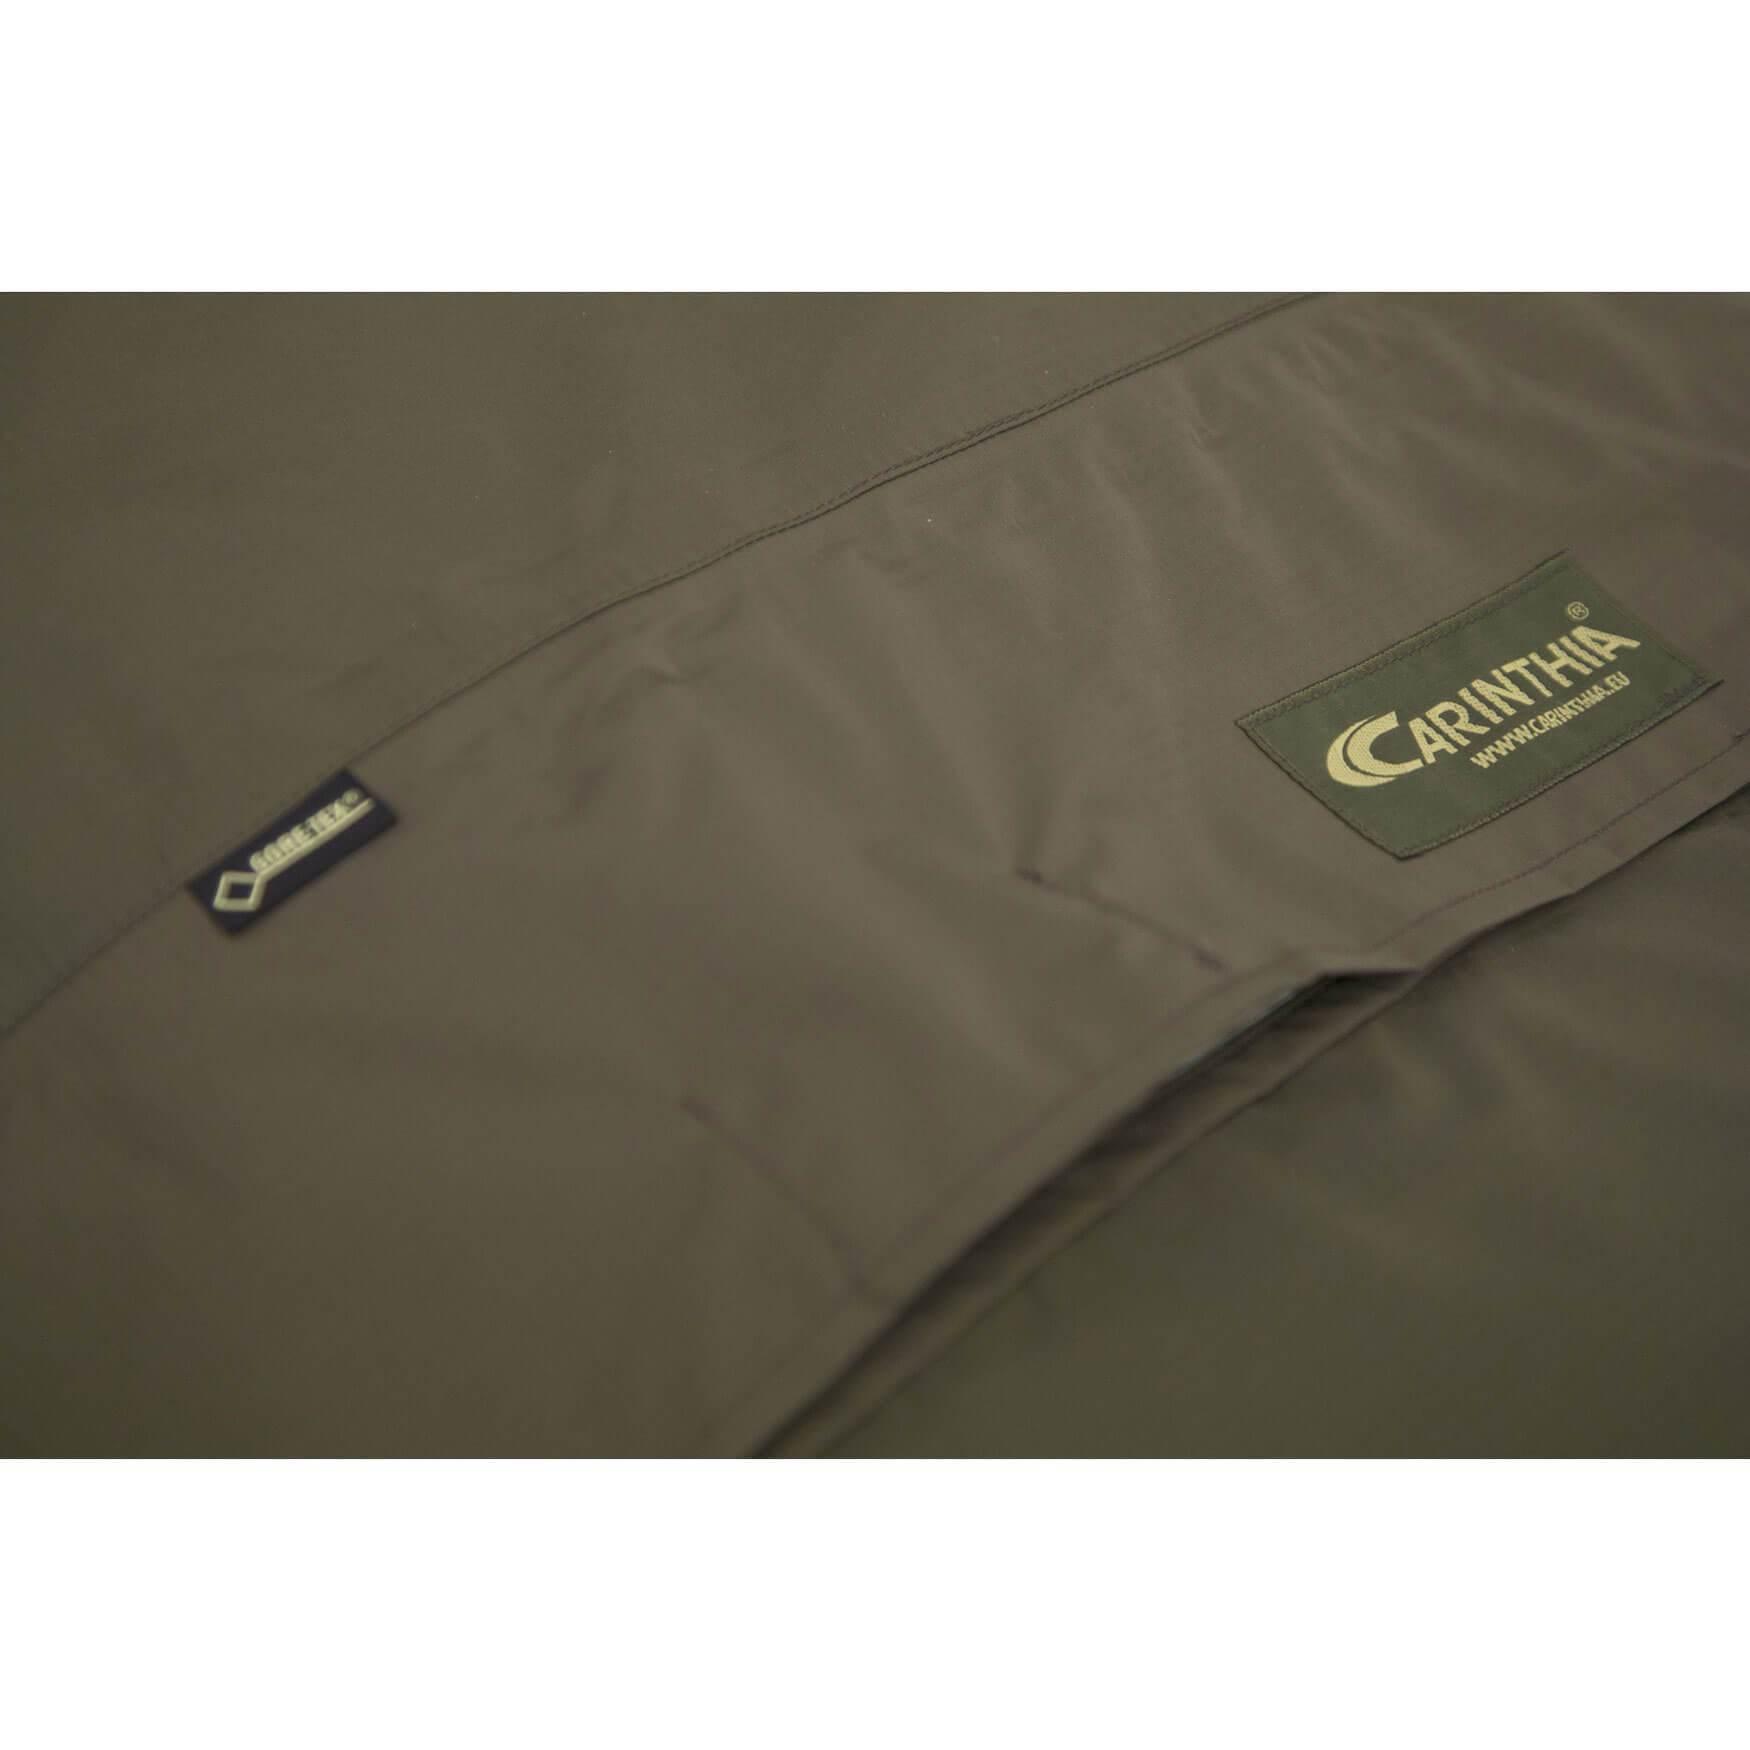 Carinthia Combat Bivy Bag (Bivy bags) från Carinthia. | TacNGear - Utrustning för polis och militär och outdoor.